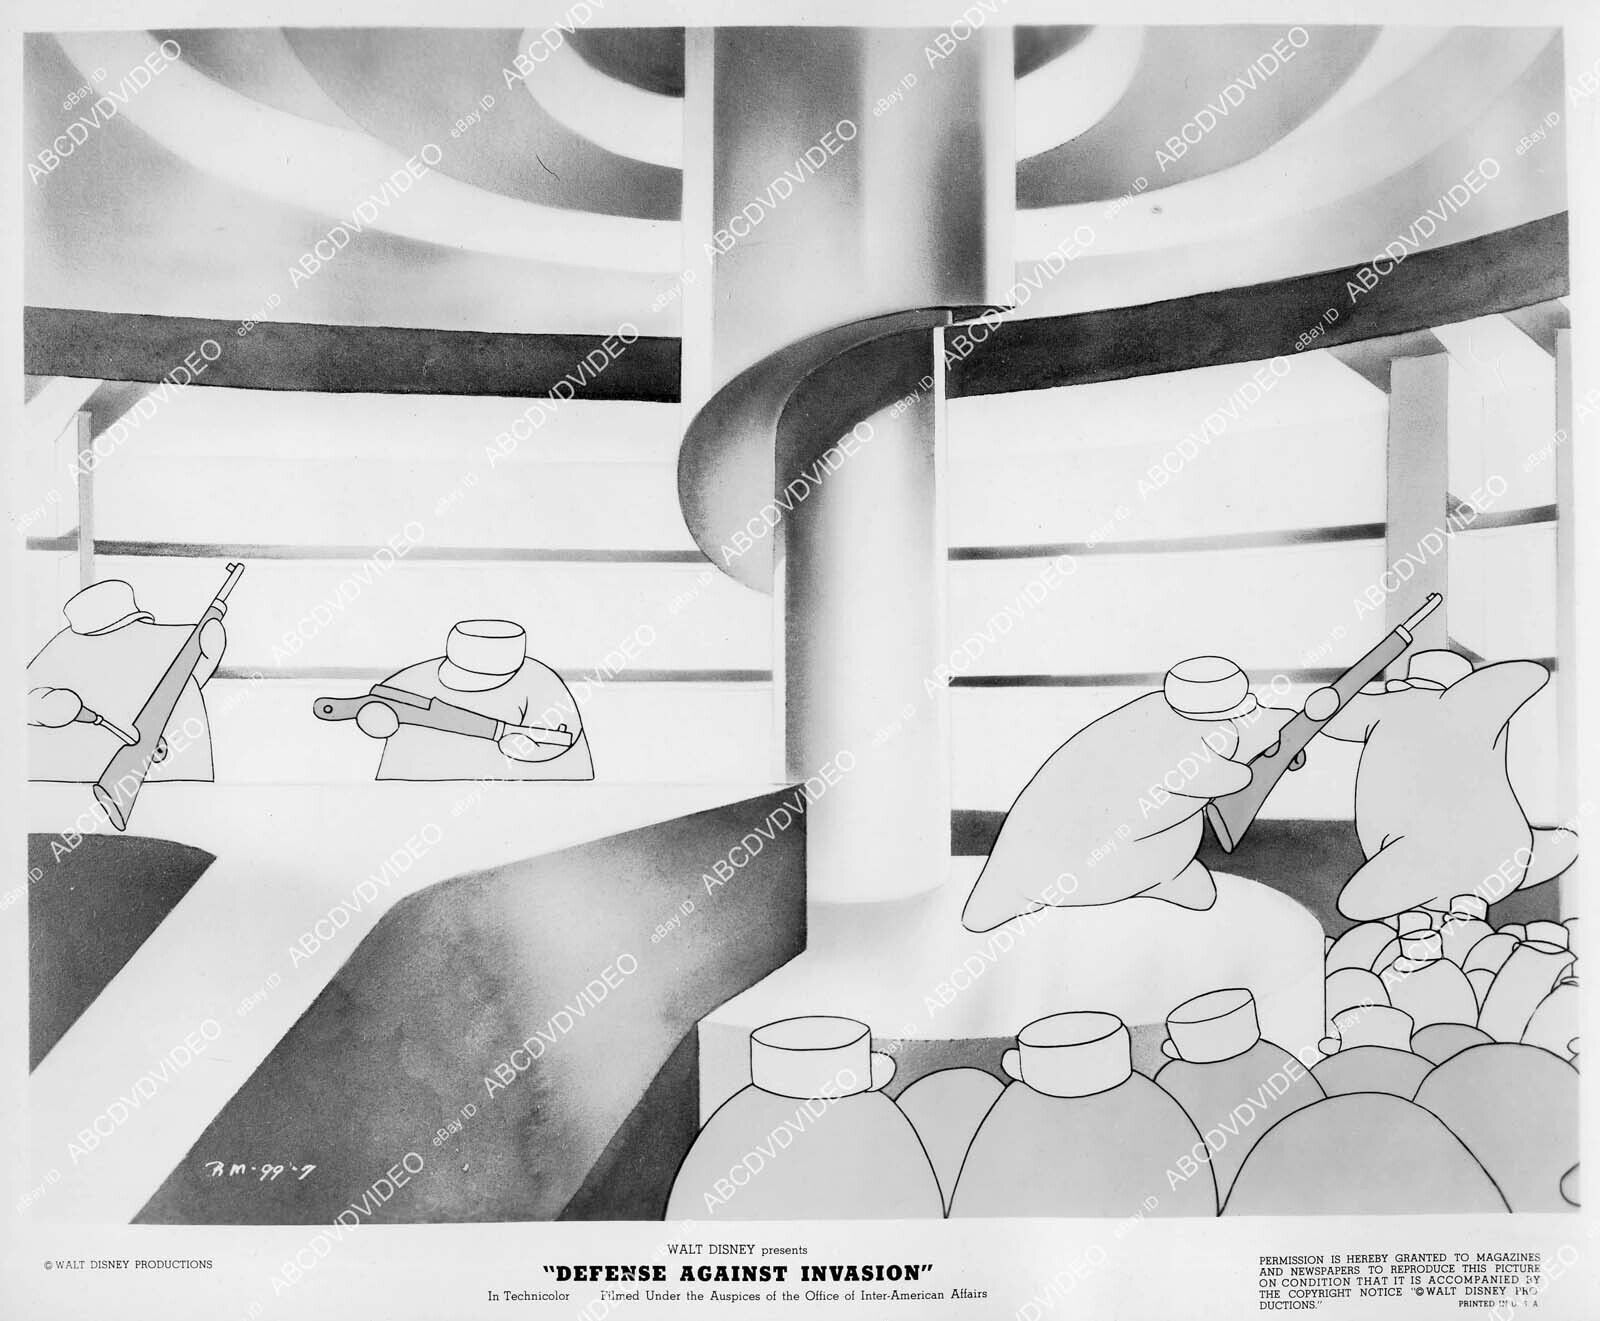 crp-4532 1946 Disney animated immune system cartoon Defense Against Invasion crp